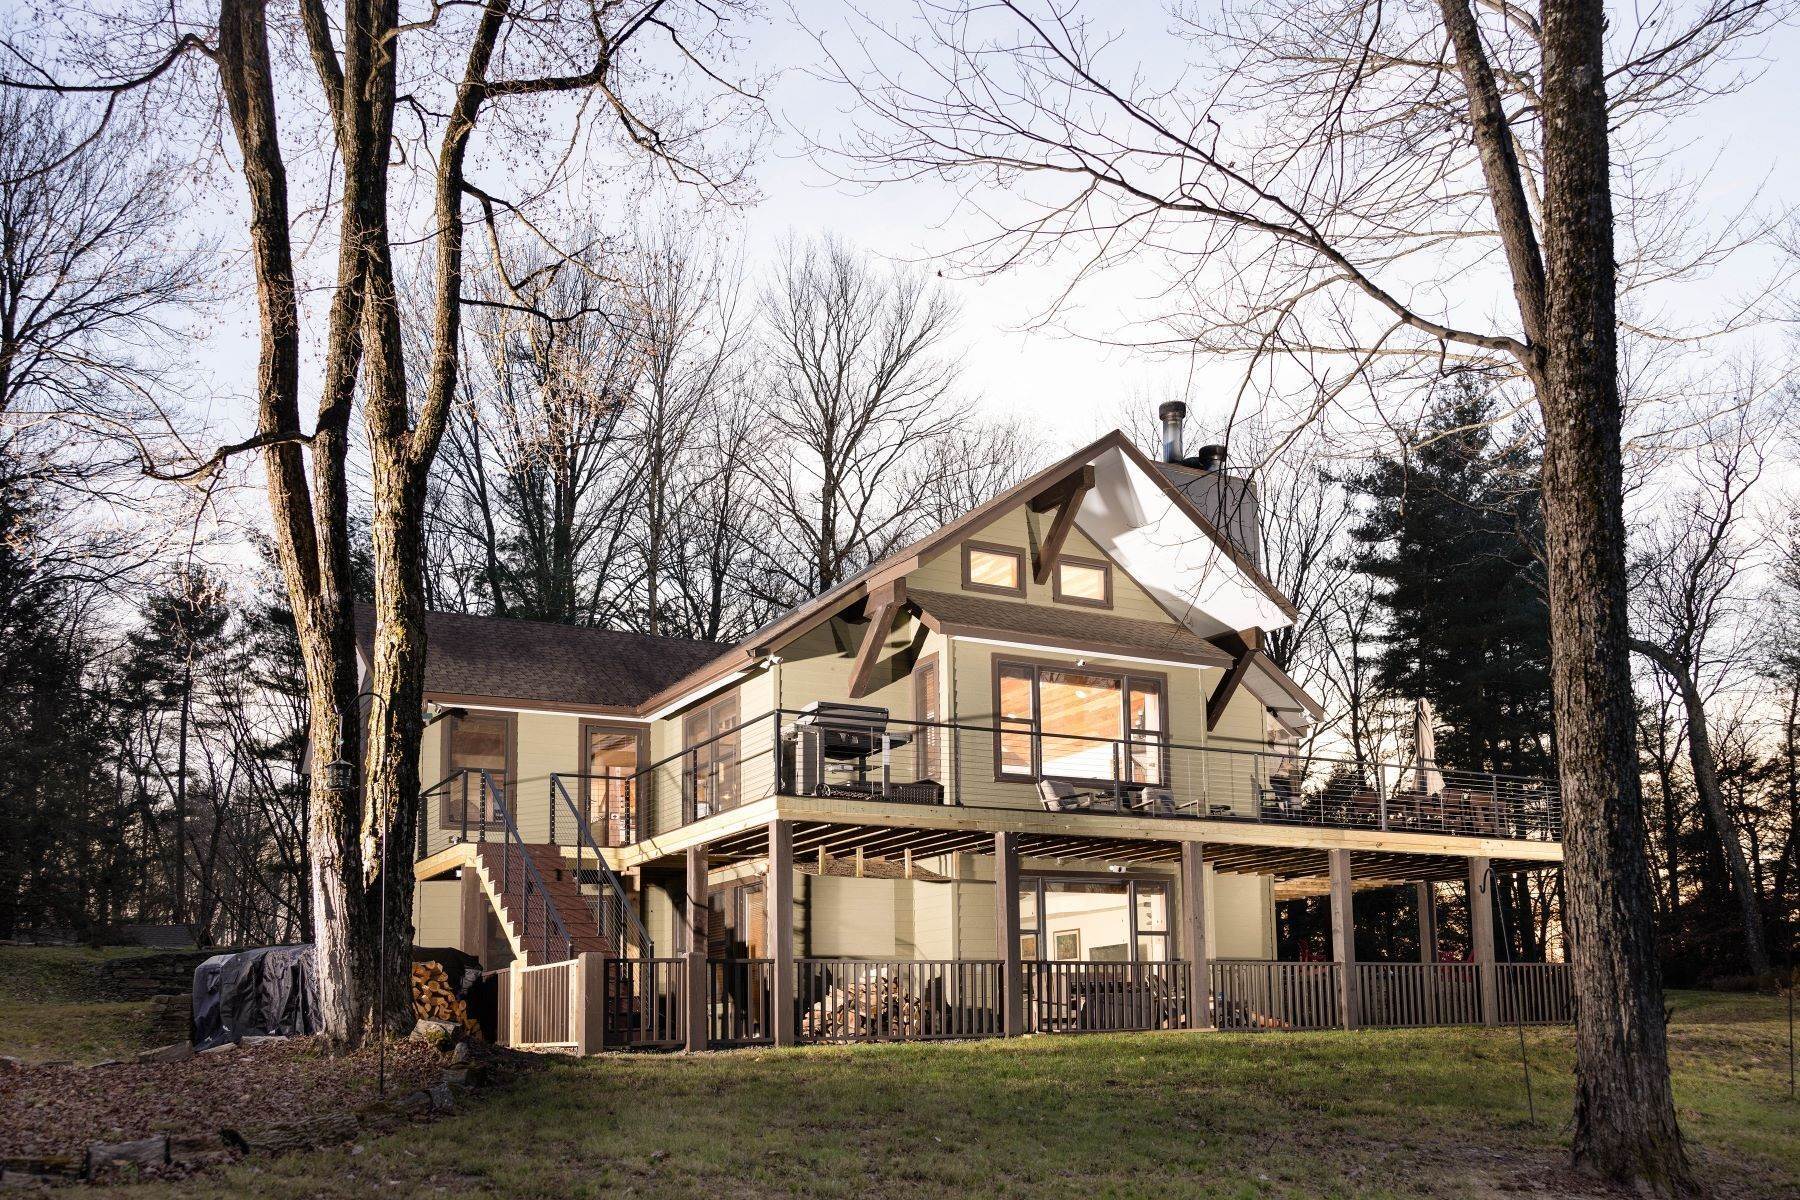 Property for Sale at Cabin by the Lake at Kenoza Lake Estates 220 Kenoza Trail Kenoza Lake, New York 12750 United States